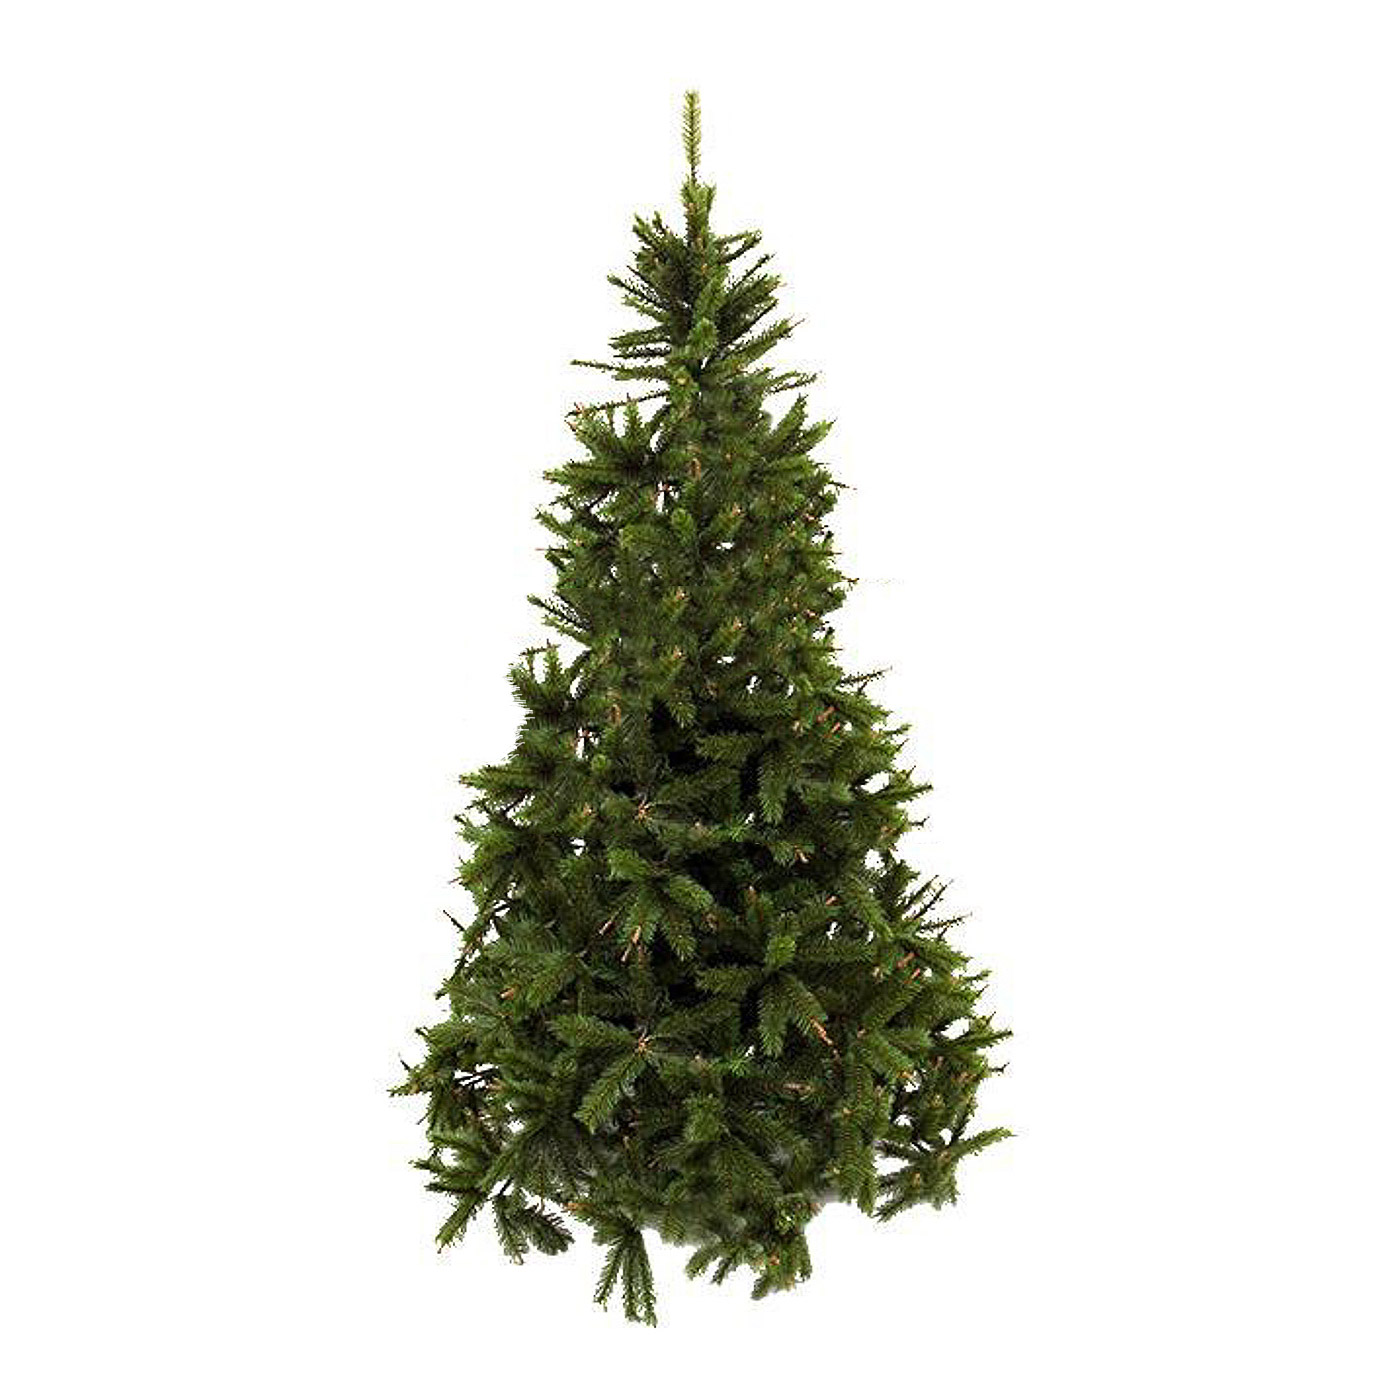 Ель искусственная Noname Sierra pine 230см (788688), цвет зеленый